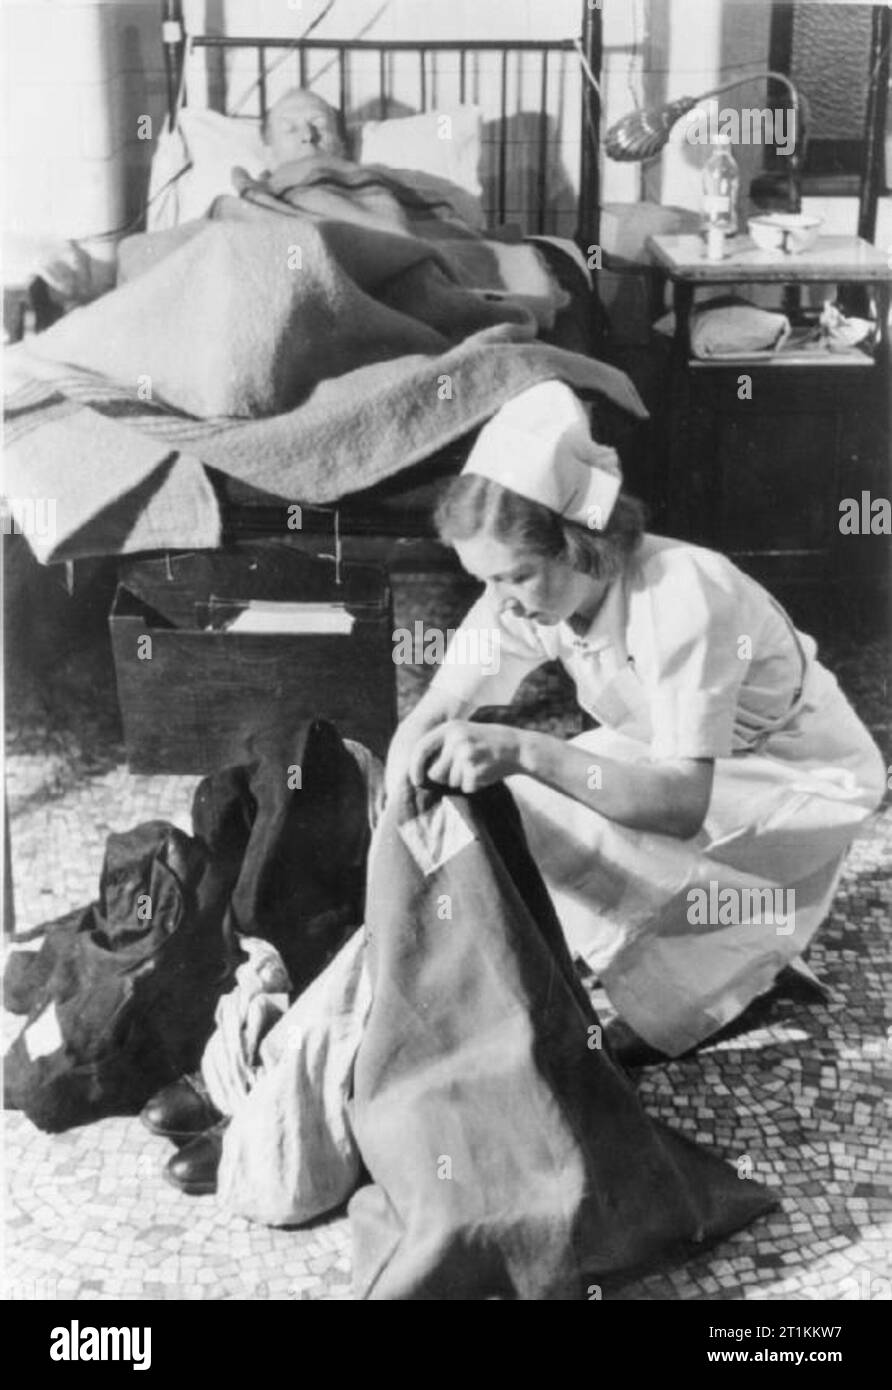 Guy's Hospital- La vie dans un hôpital de Londres, Angleterre, 1941 Une infirmière recueille l'ensemble des vêtements et effets personnels d'un patient, qu'il dort dans le lit derrière elle sur un ward au Guy's Hospital de Londres en 1941. Tous les vêtements retirés de blessés sont placés dans des sacs verts avec le nom de la victime sur eux. Banque D'Images